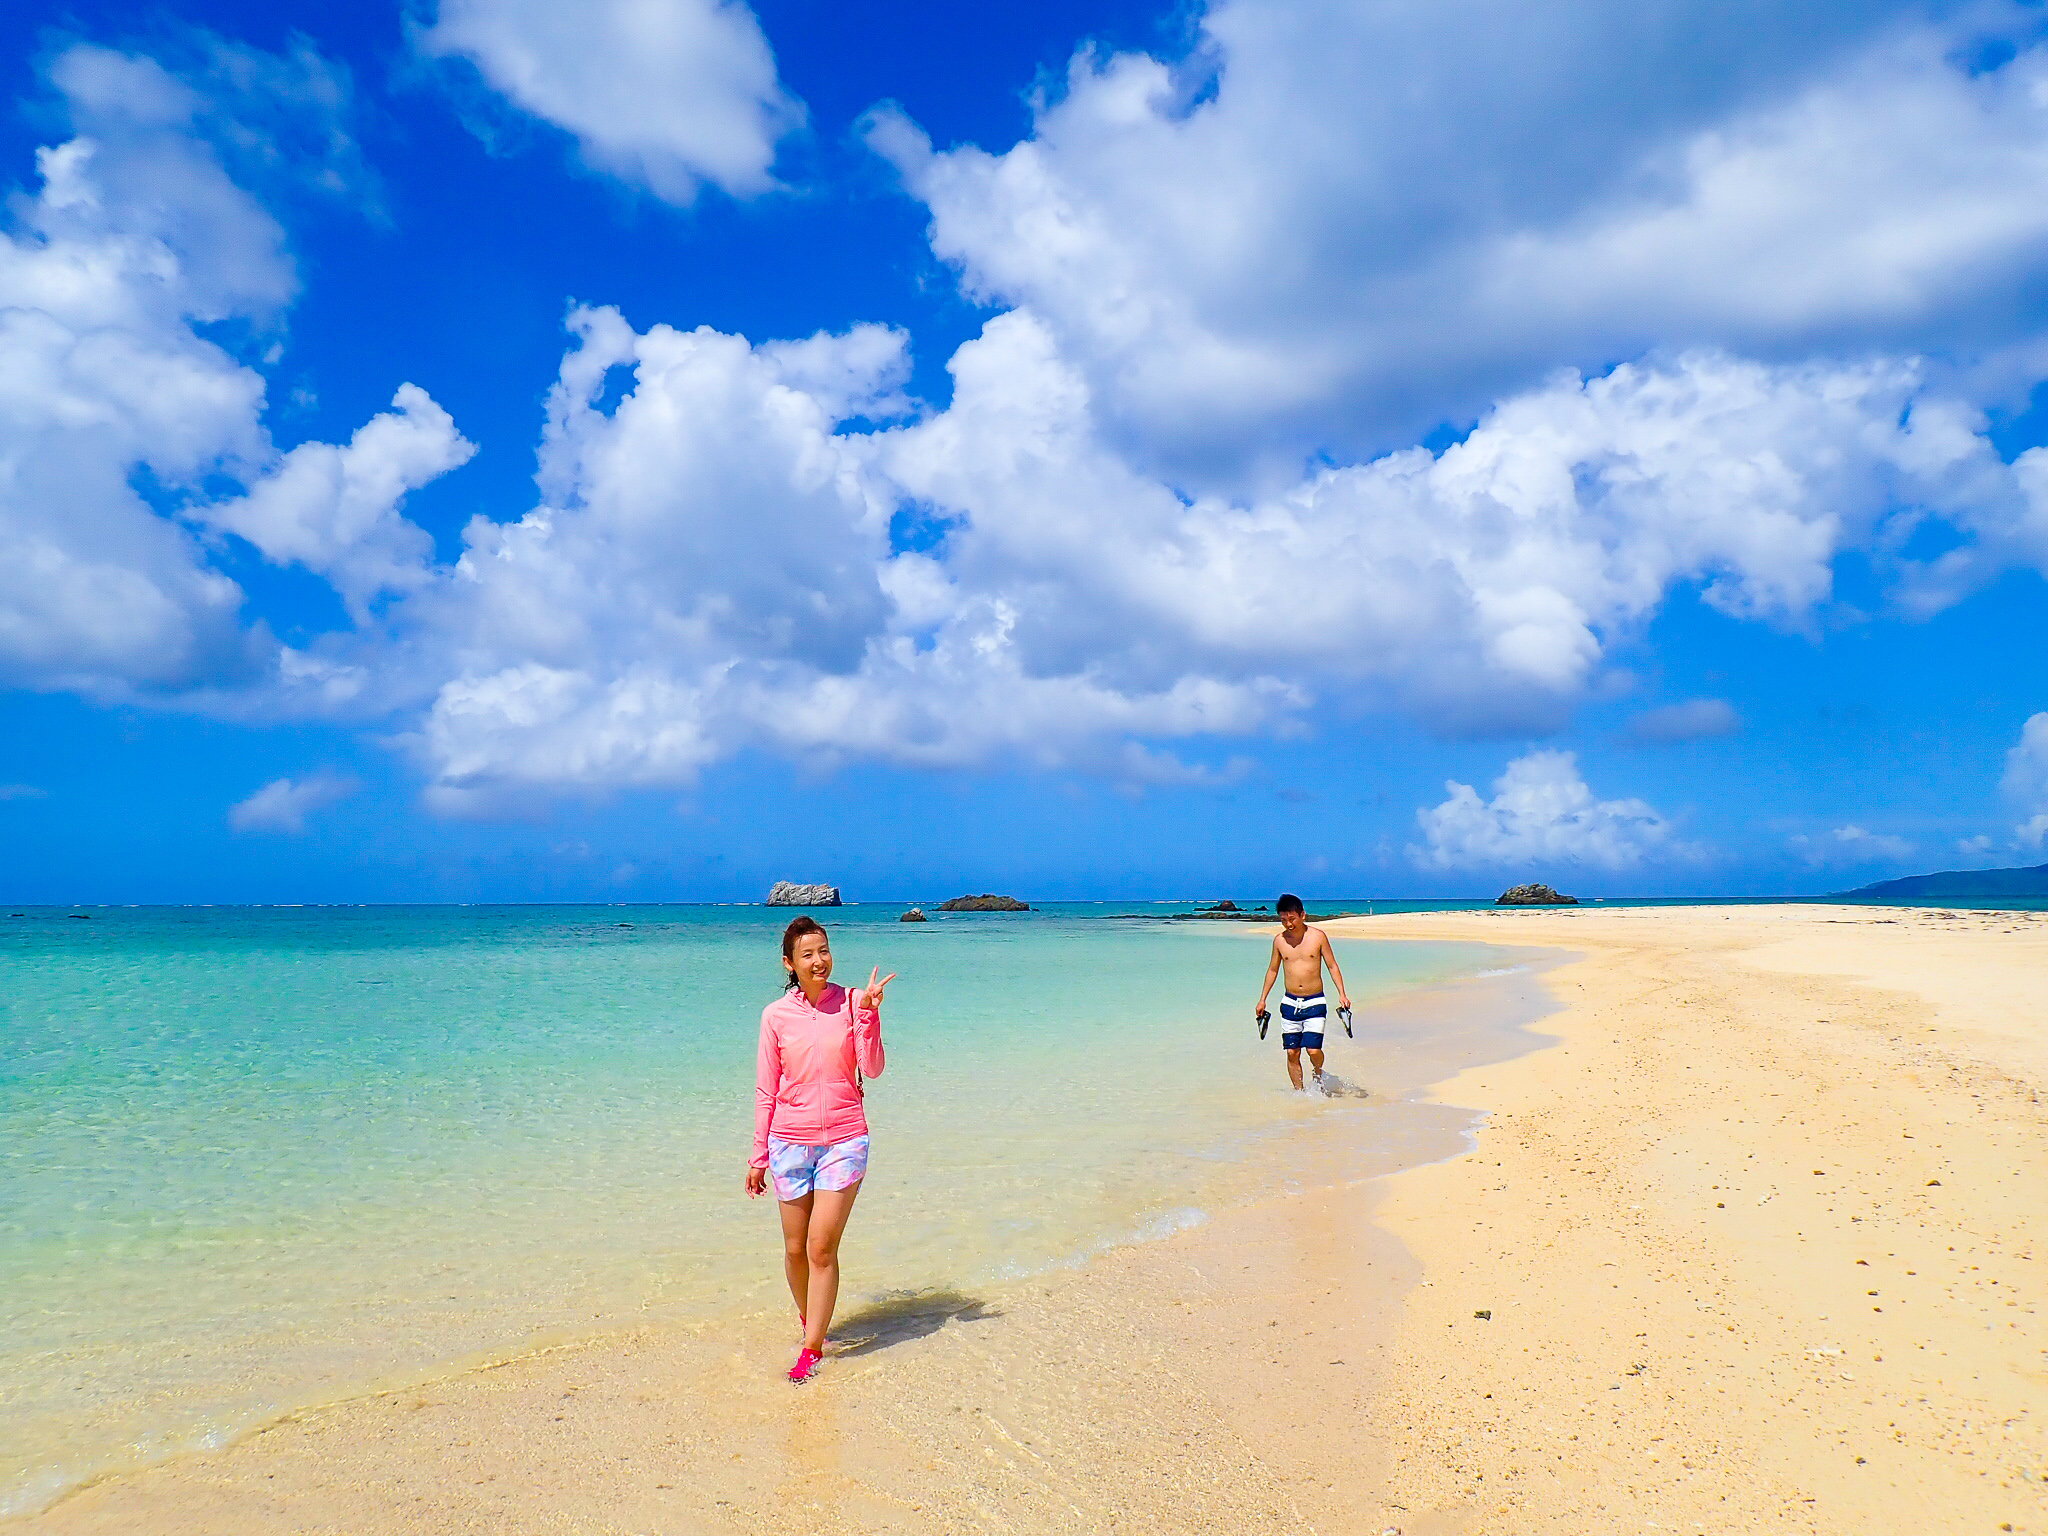 石垣島のビーチ26選 海水浴やシュノーケリングを楽しもう 石垣島ツアーズ